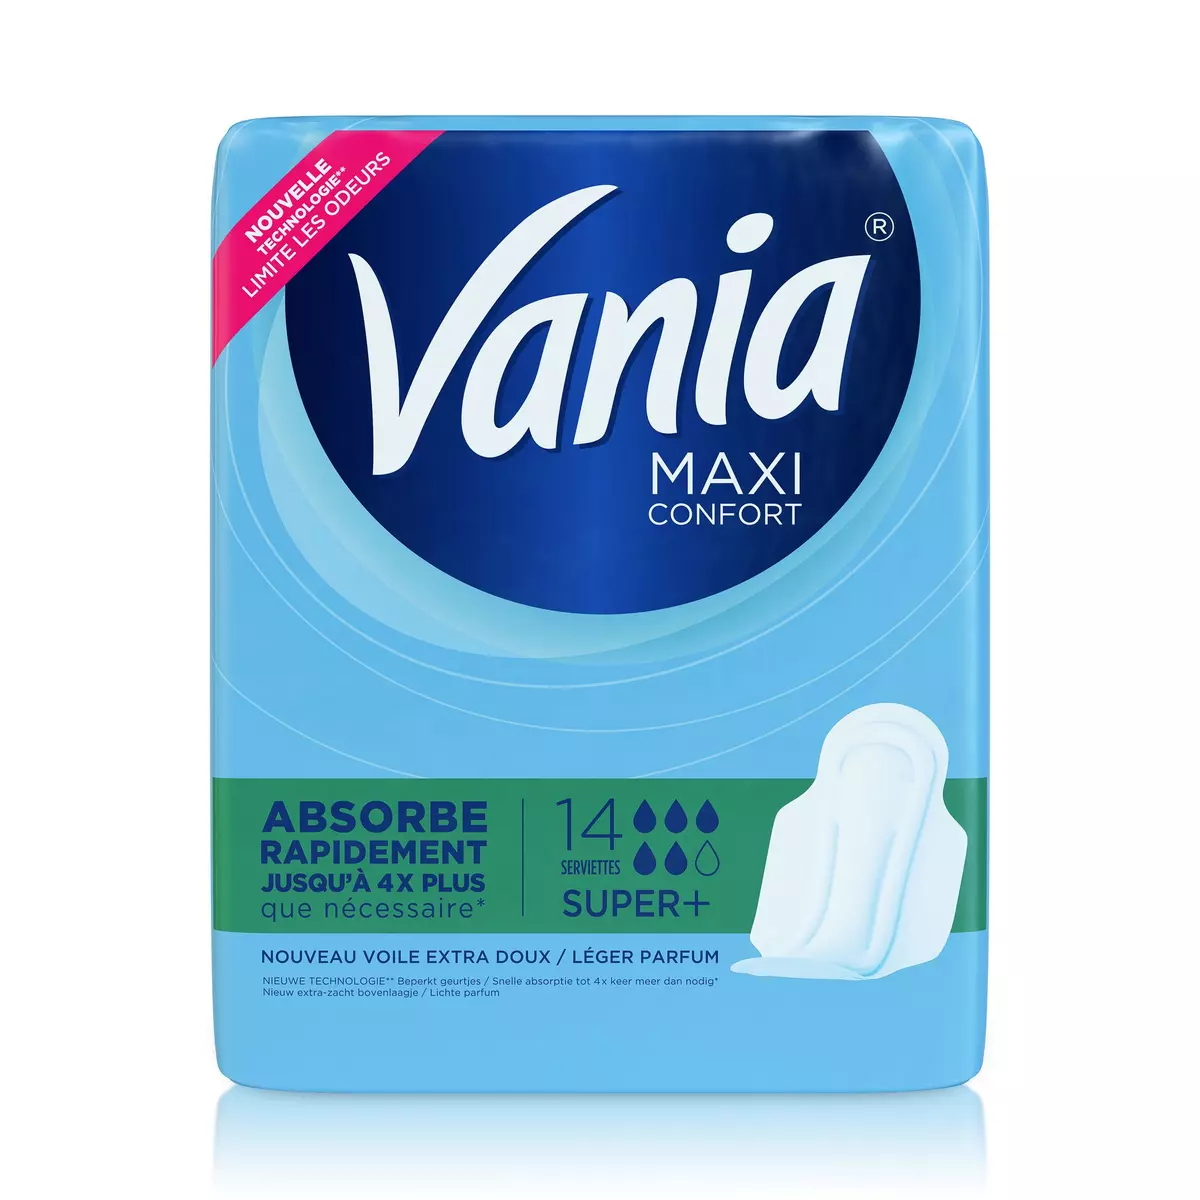 VANIA Maxi Confort serviettes hygiéniques avec ailettes super+ 14 serviettes